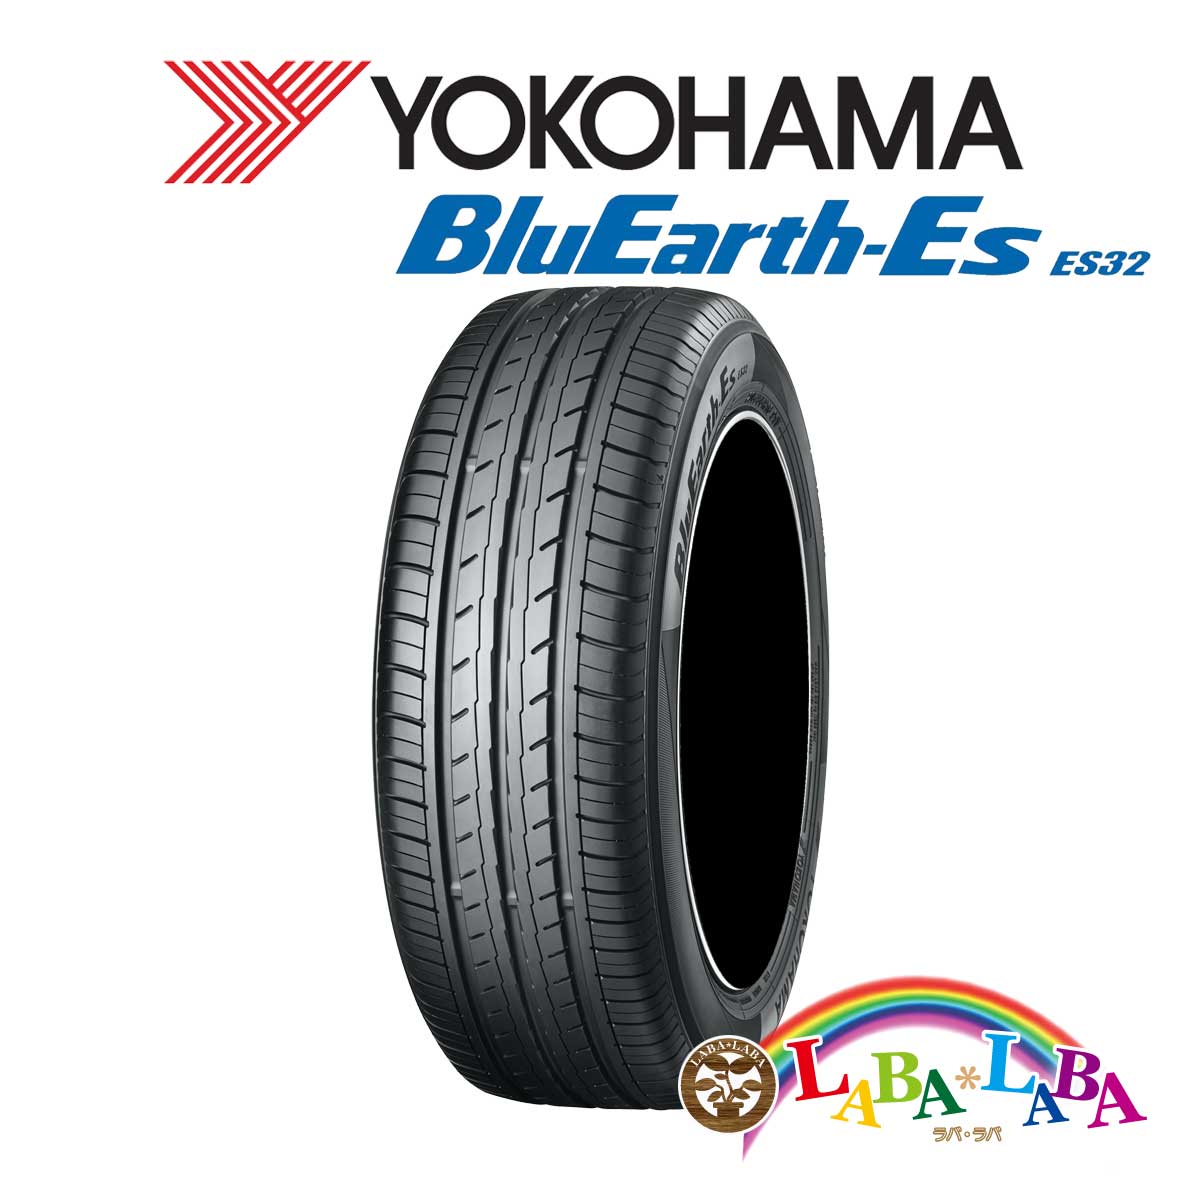 毎日続々入荷 ２本以上送料無料 国産タイヤ サマータイヤ 新品 タイヤのみ YOKOHAMA ヨコハマ 65R15 ES32 BluEarth-Es 91S 最大52%OFFクーポン 195 ブルーアース